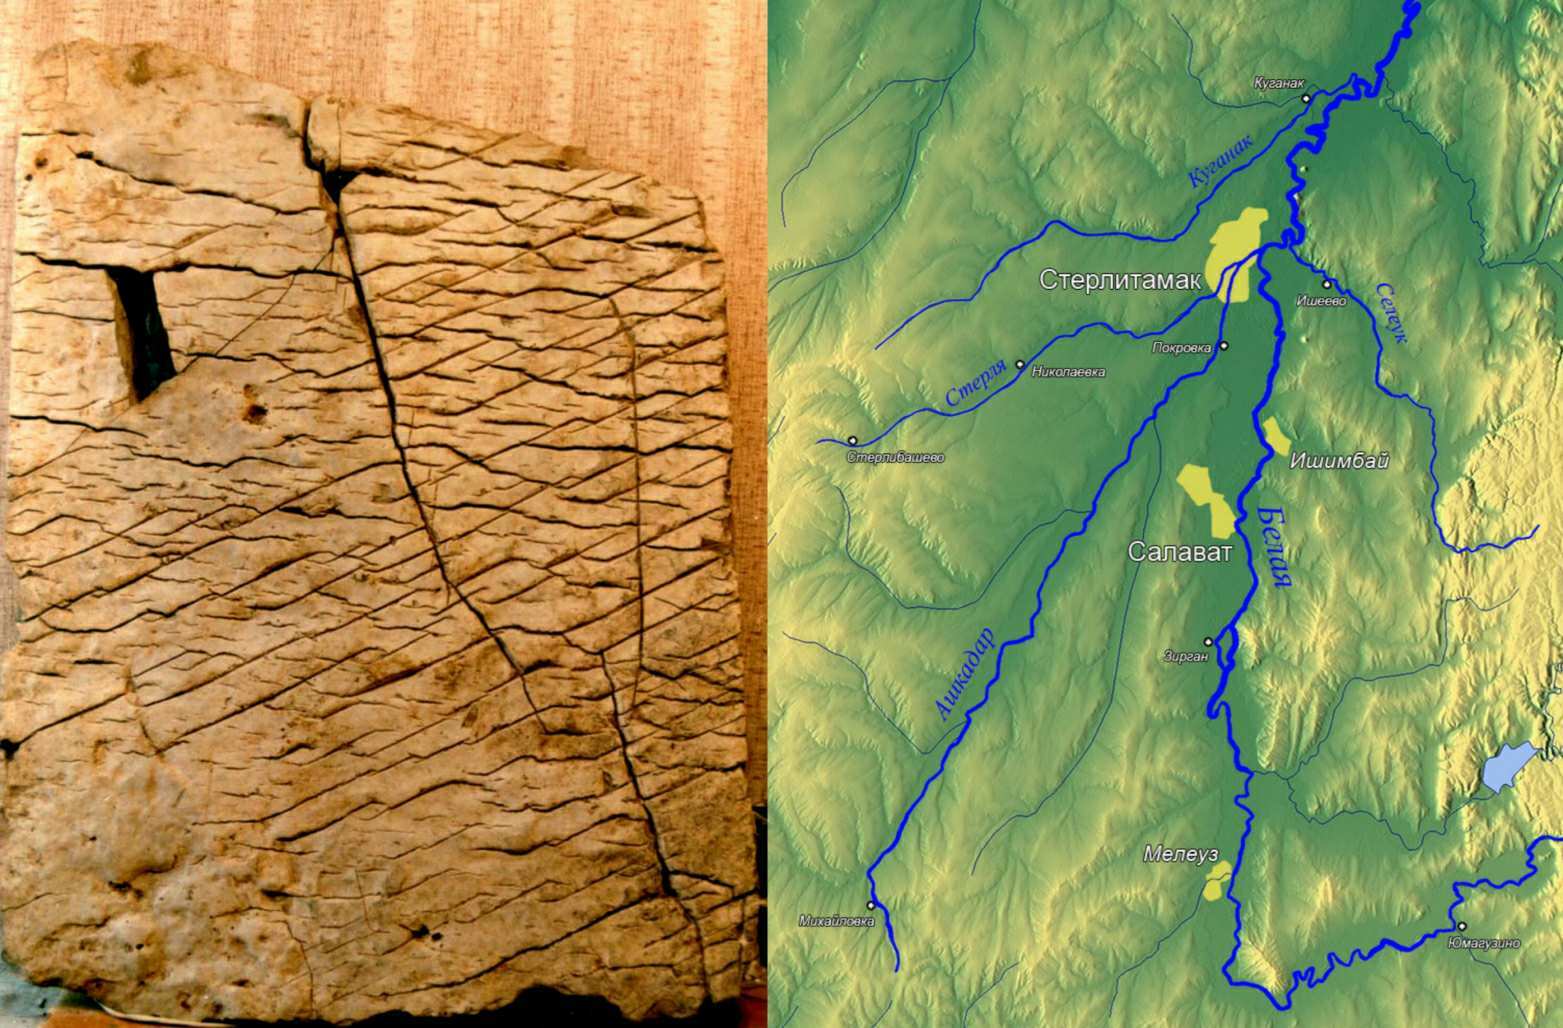 zdá sa, že tableta zobrazuje vysoko presnú topografickú mapu Bashkirie, špecifickej oblasti pohoria Ural, v mierke približne 1: 1.1 km